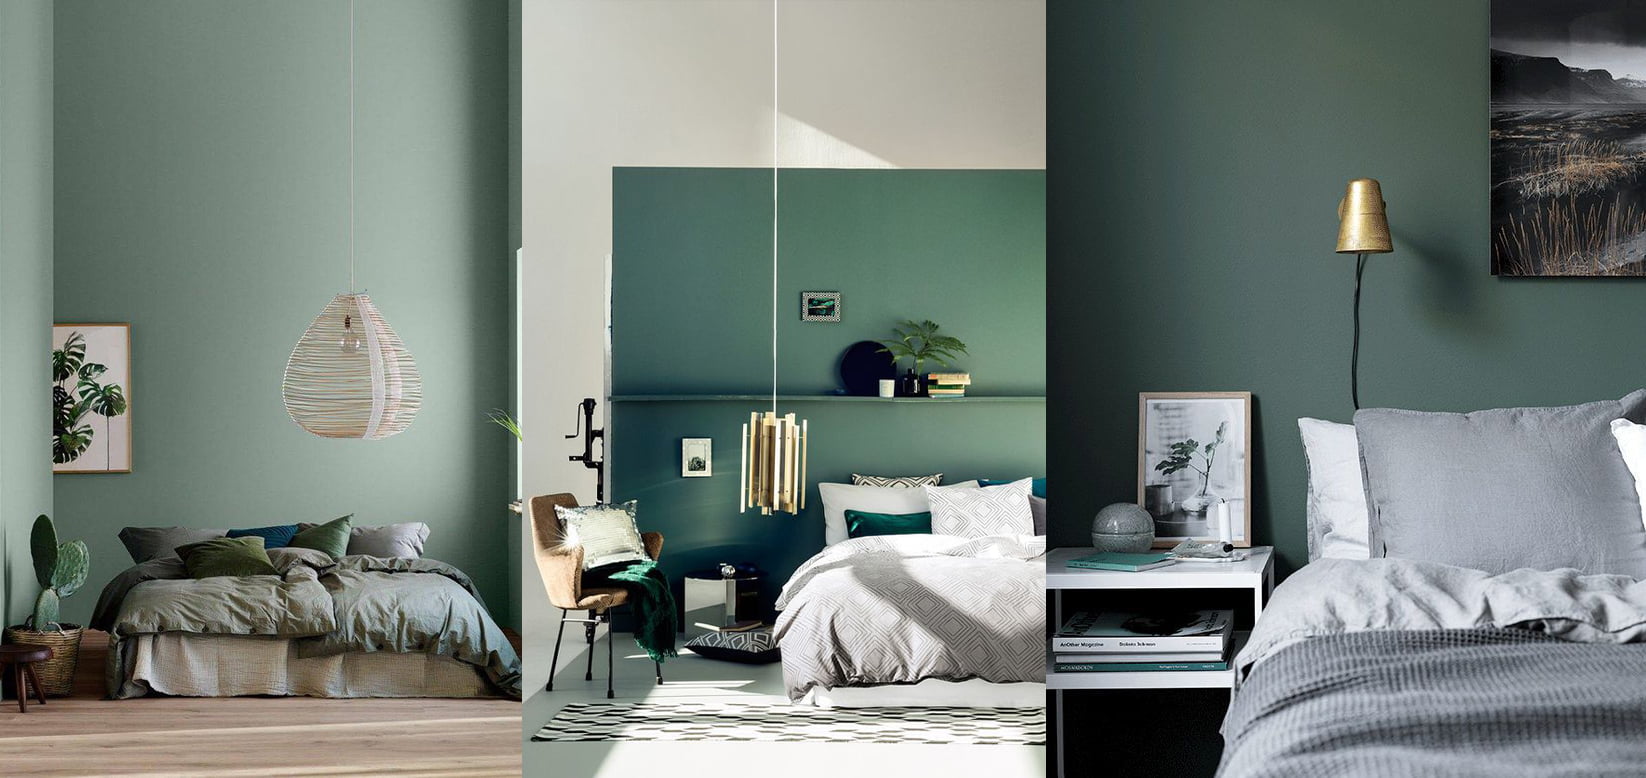 green color bedroom ideas 2